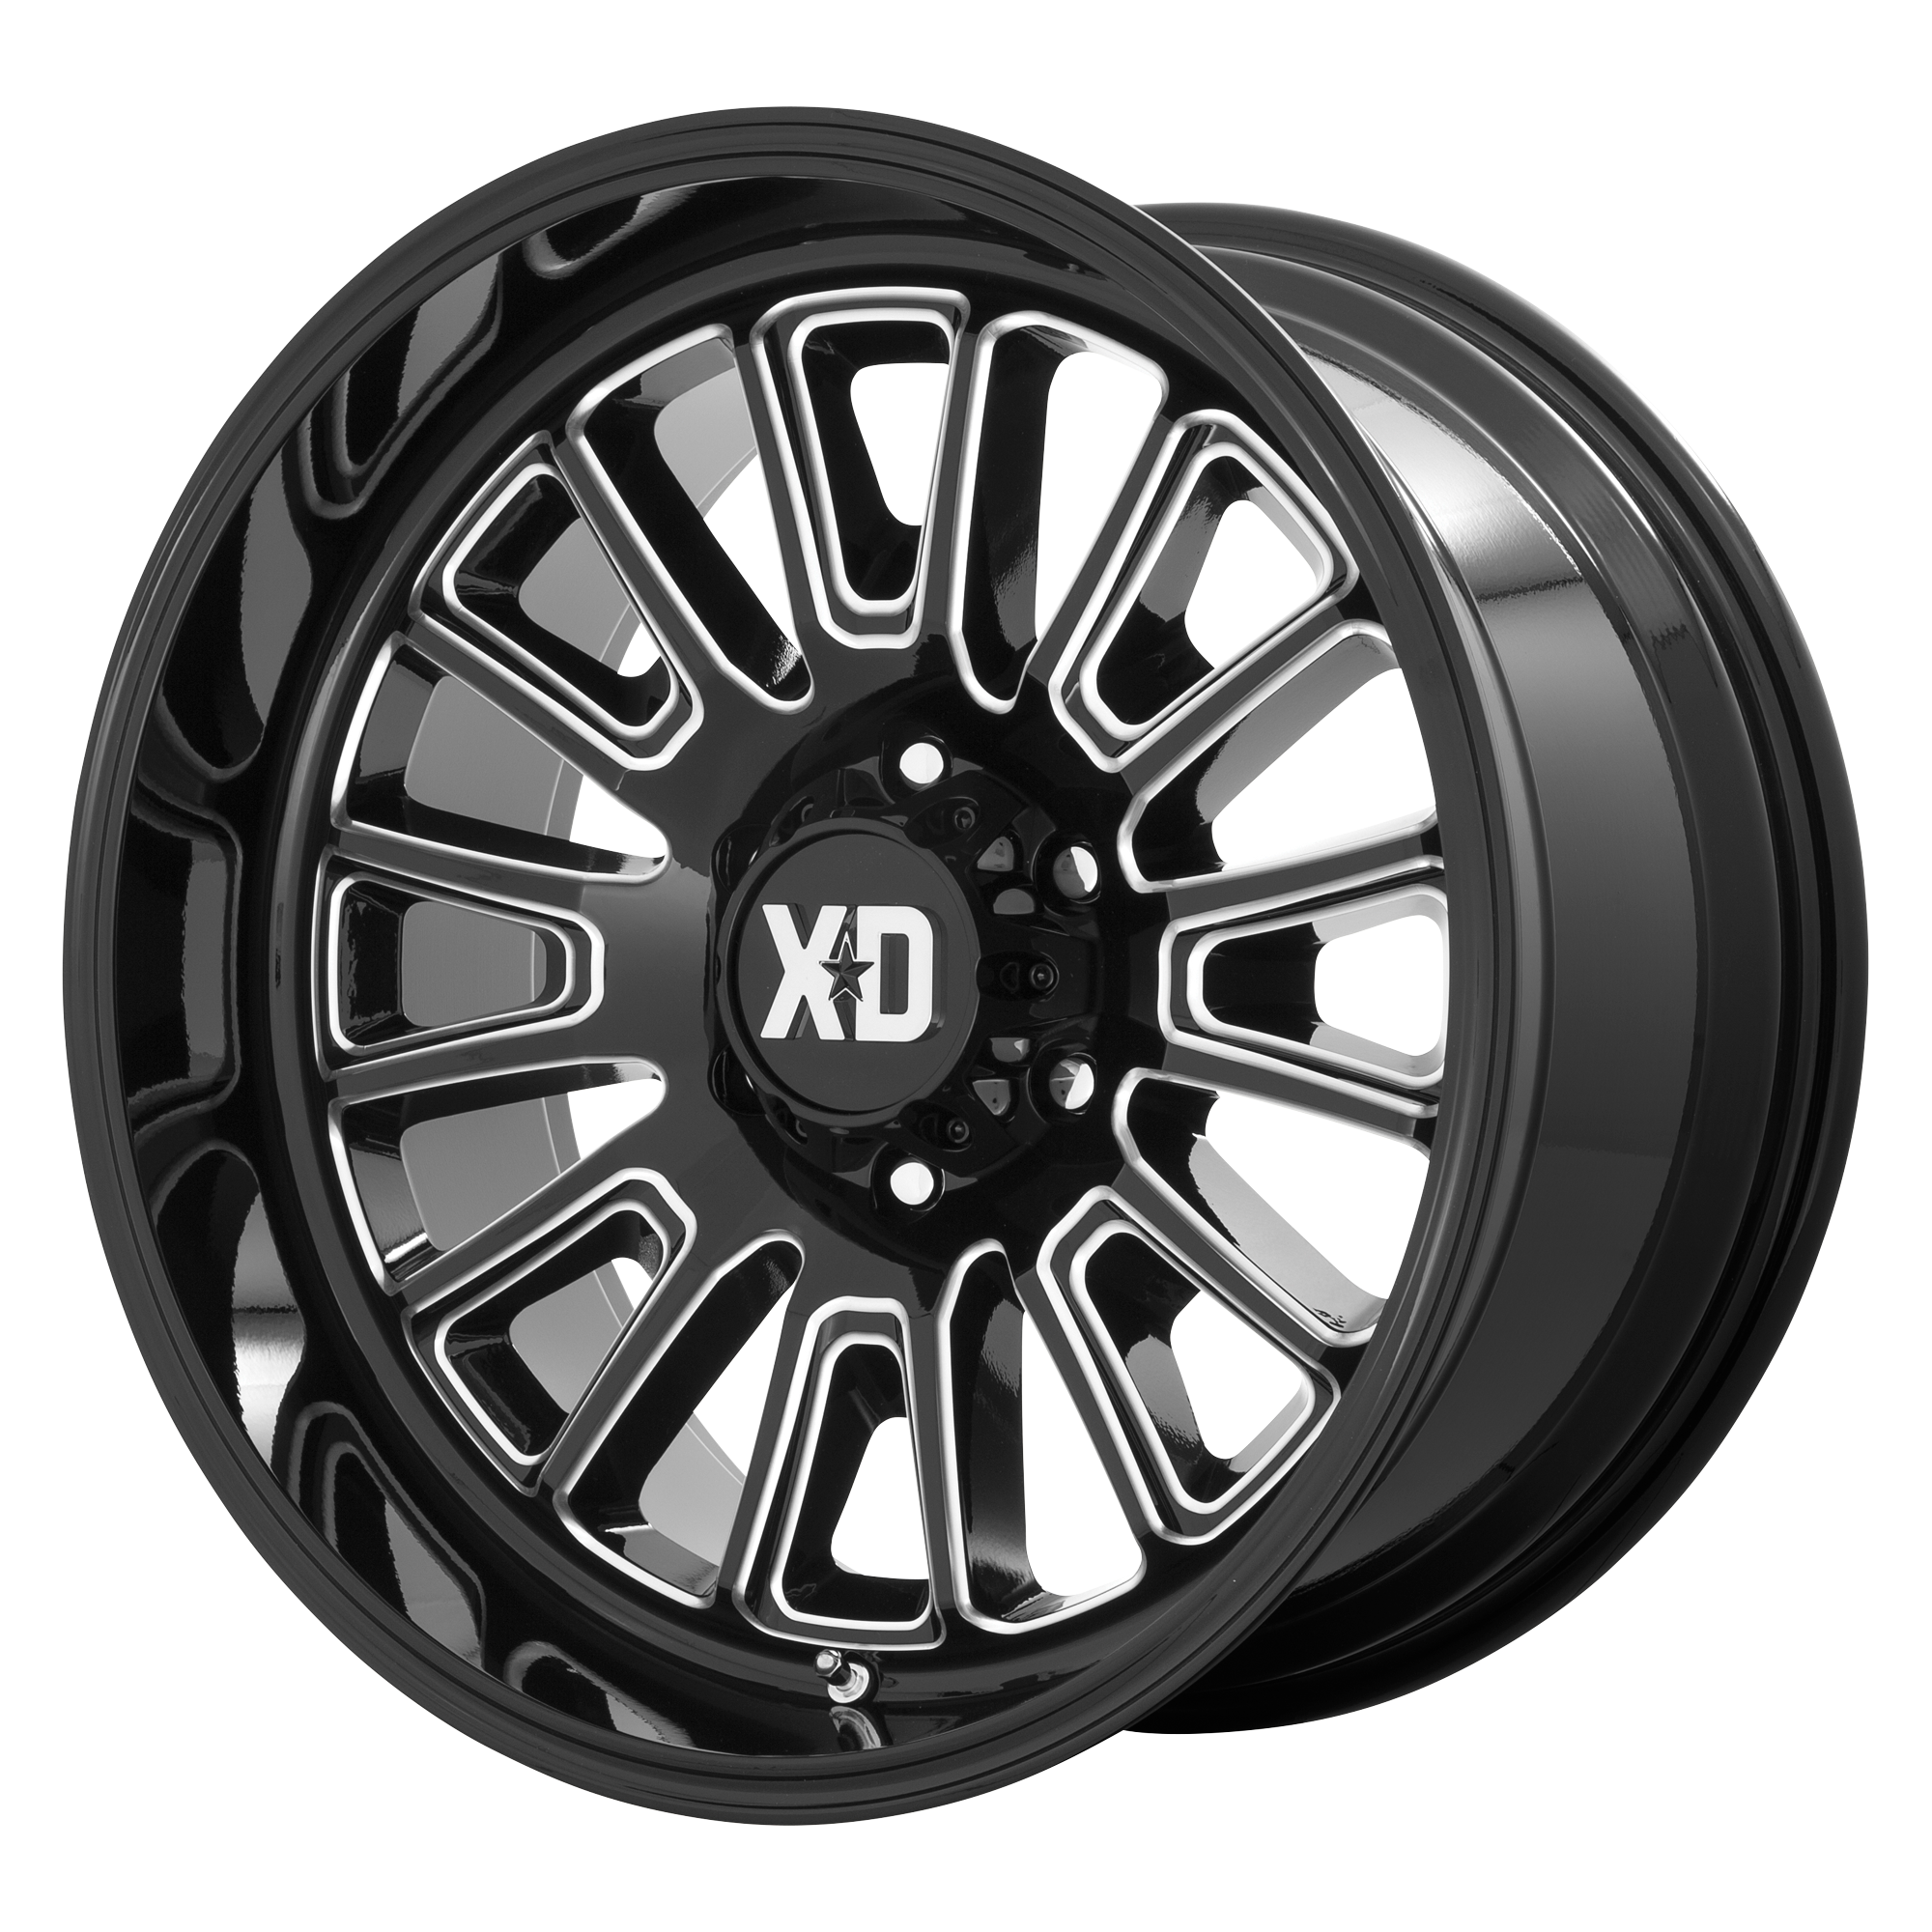 XD 20"x10" Non-Chrome Gloss Black Milled Custom Wheel ARSWCWXD86421063318N